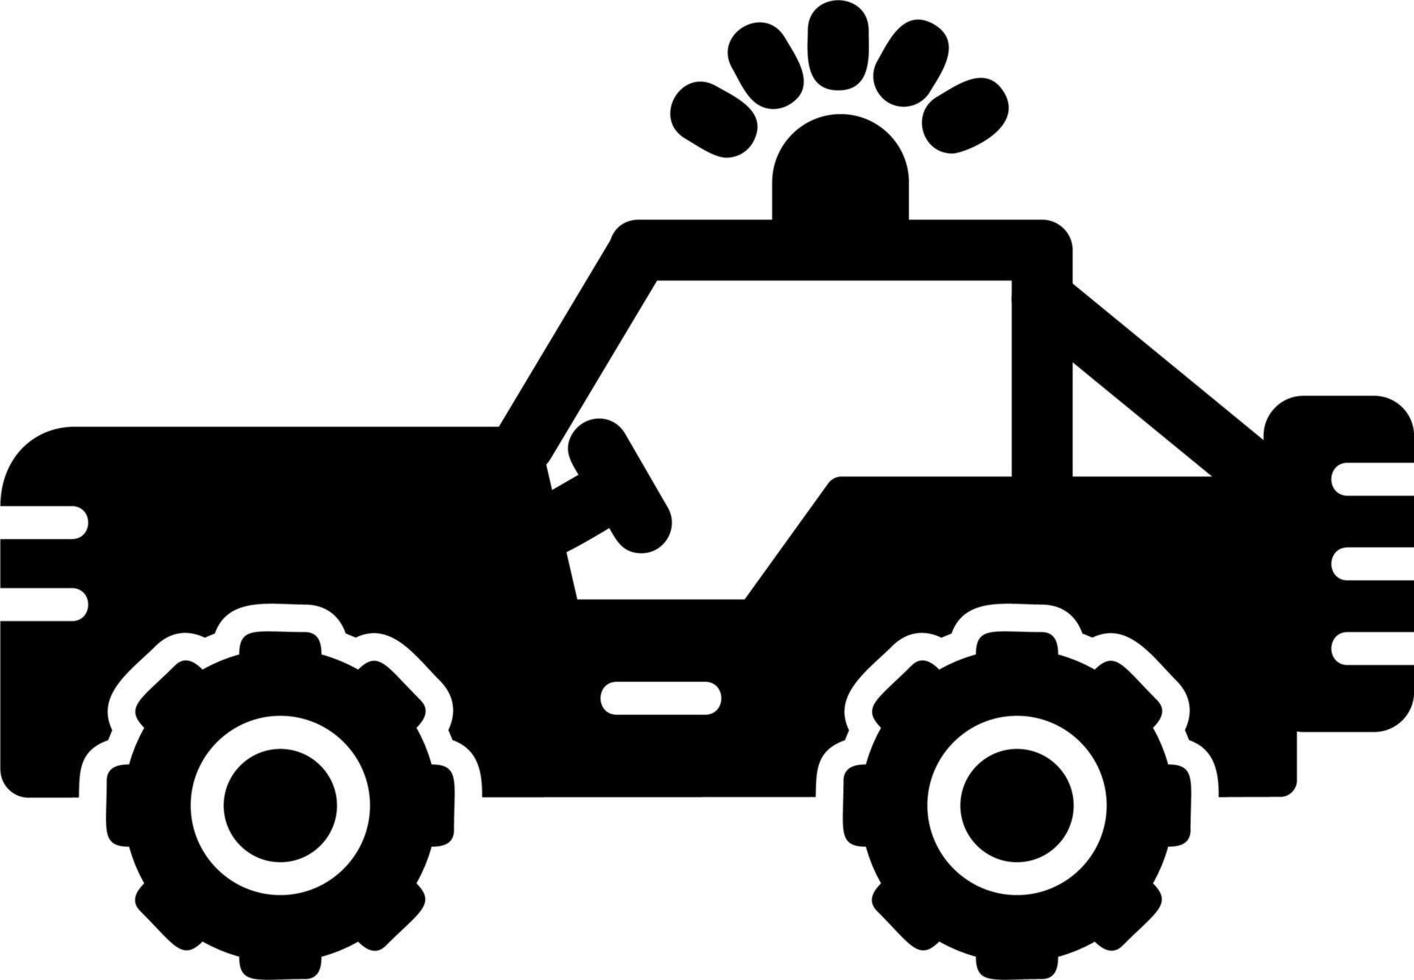 militär jeep vektor ikon